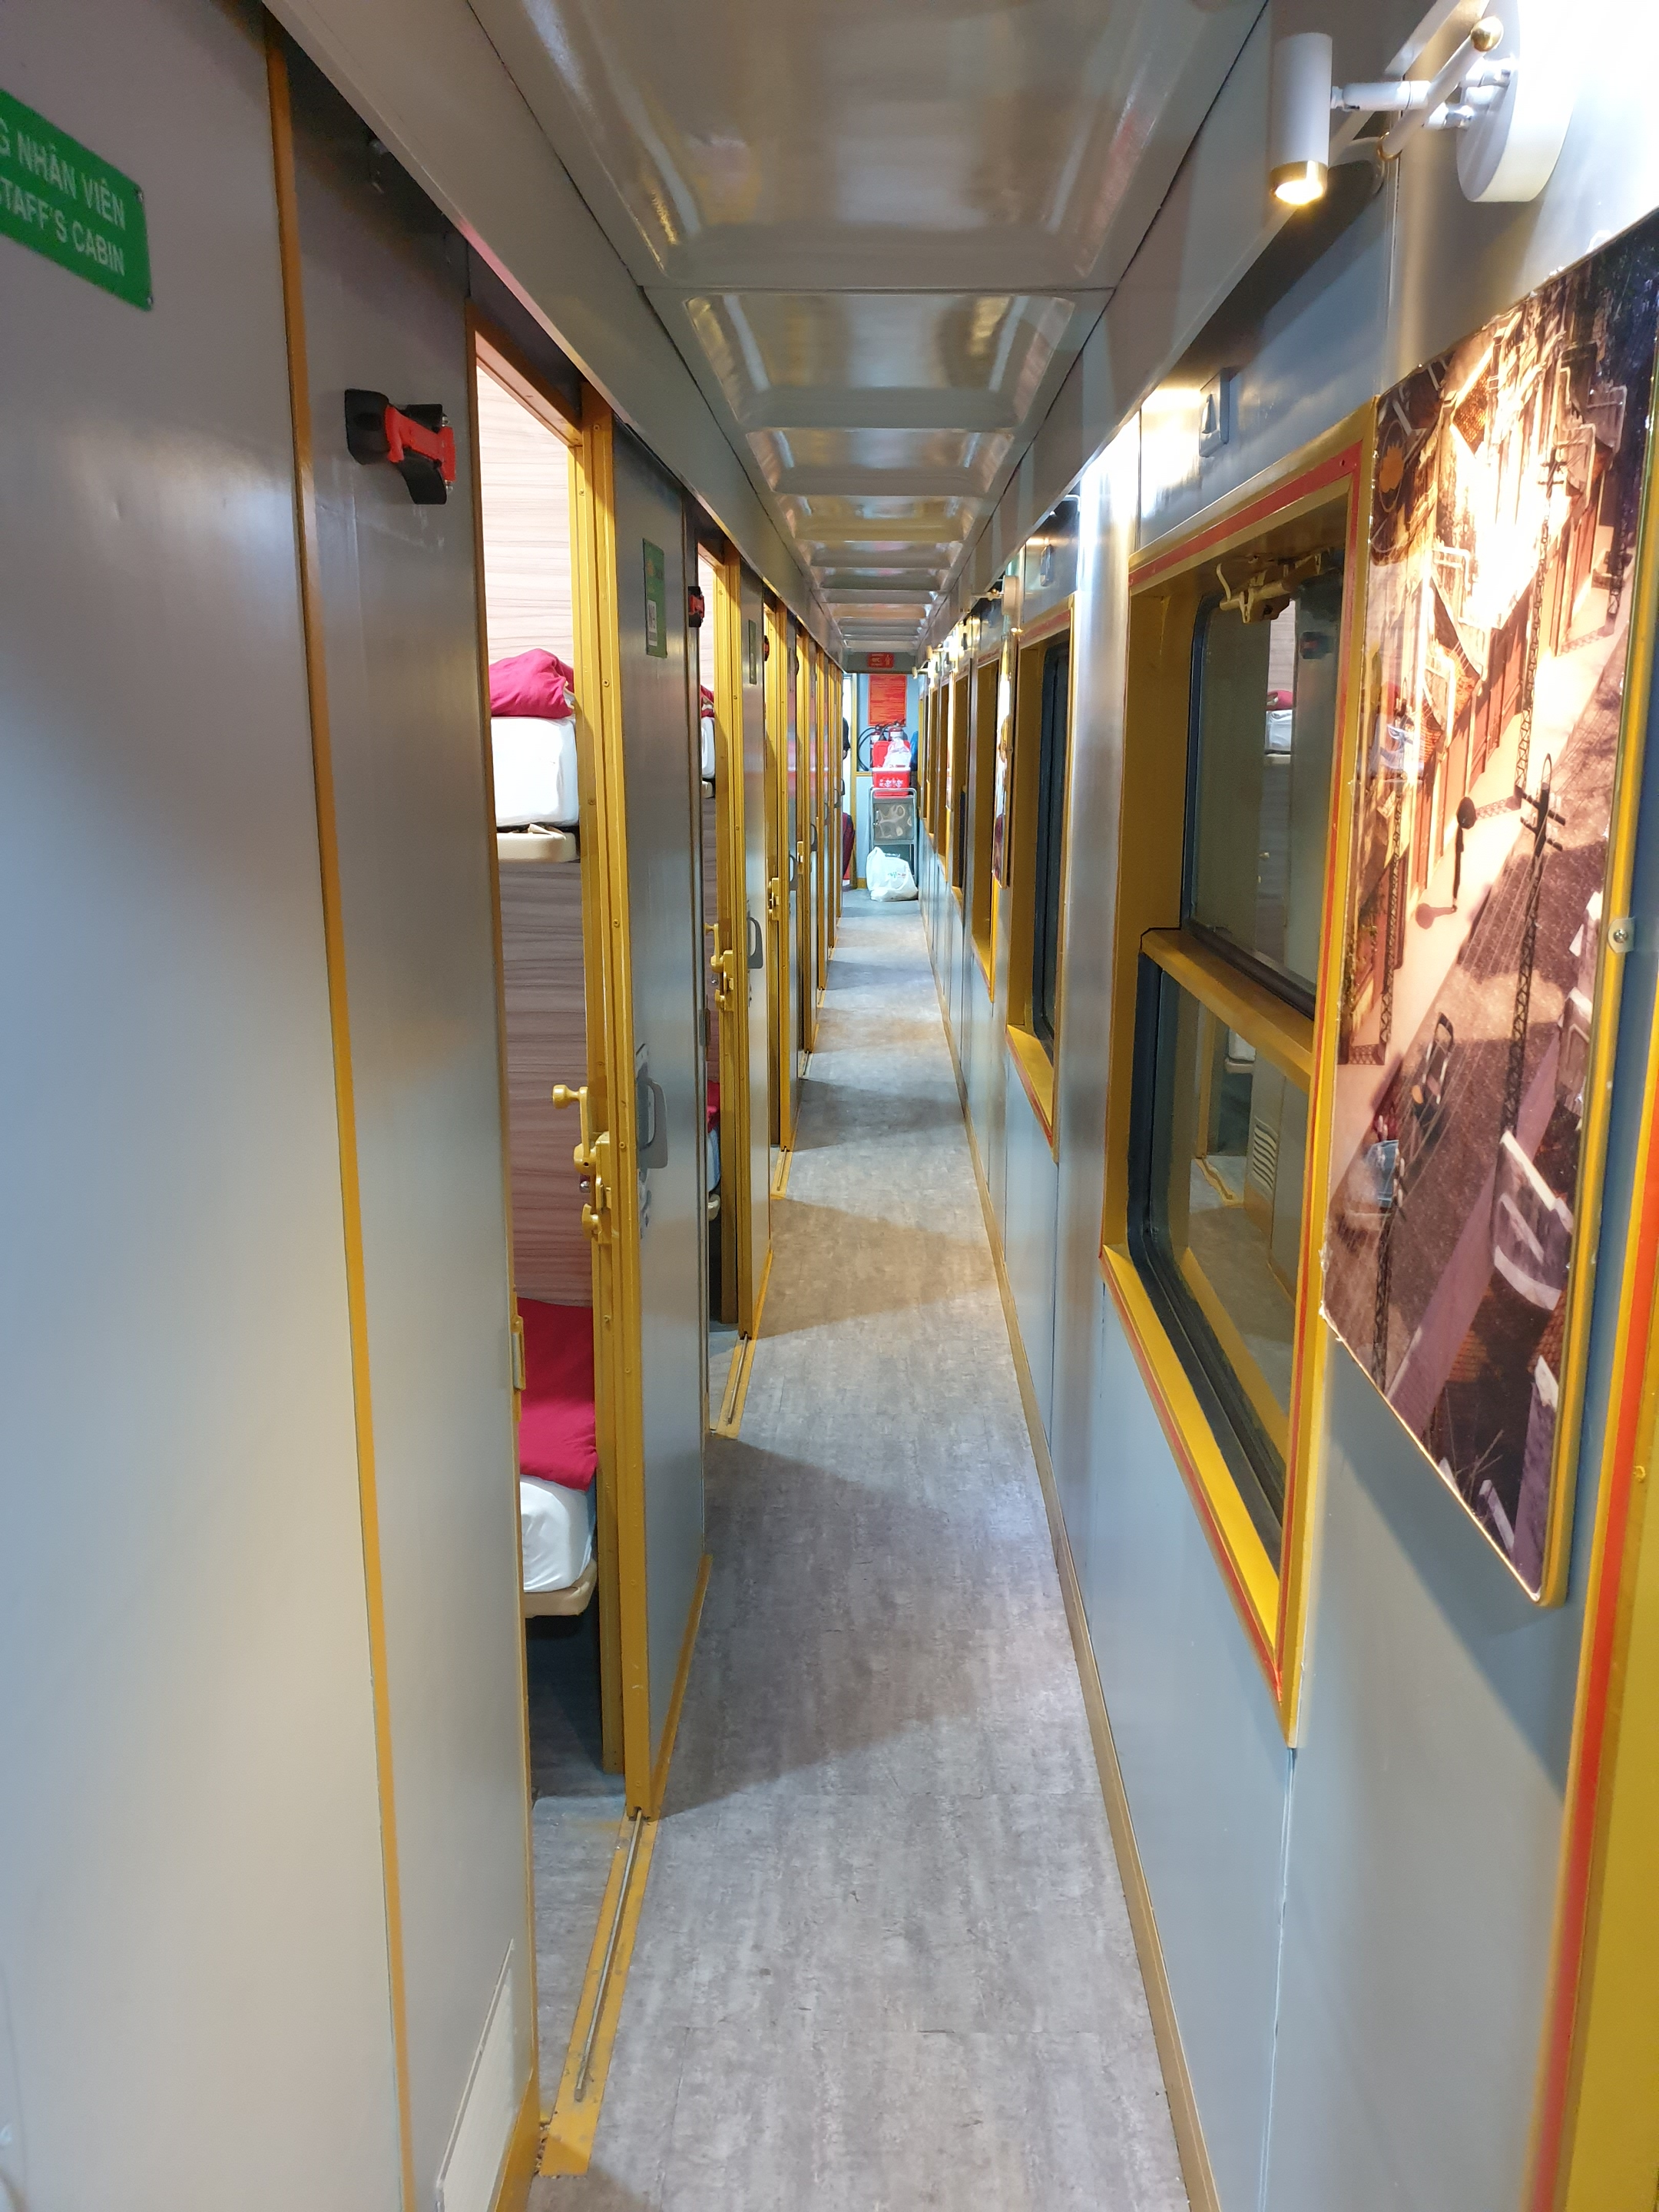 Ninh Binh - Da Nang in VIP 2 berth-cabin Lotus train service on SE19 (22h00 – 12h20) - Price per person not per cabin 